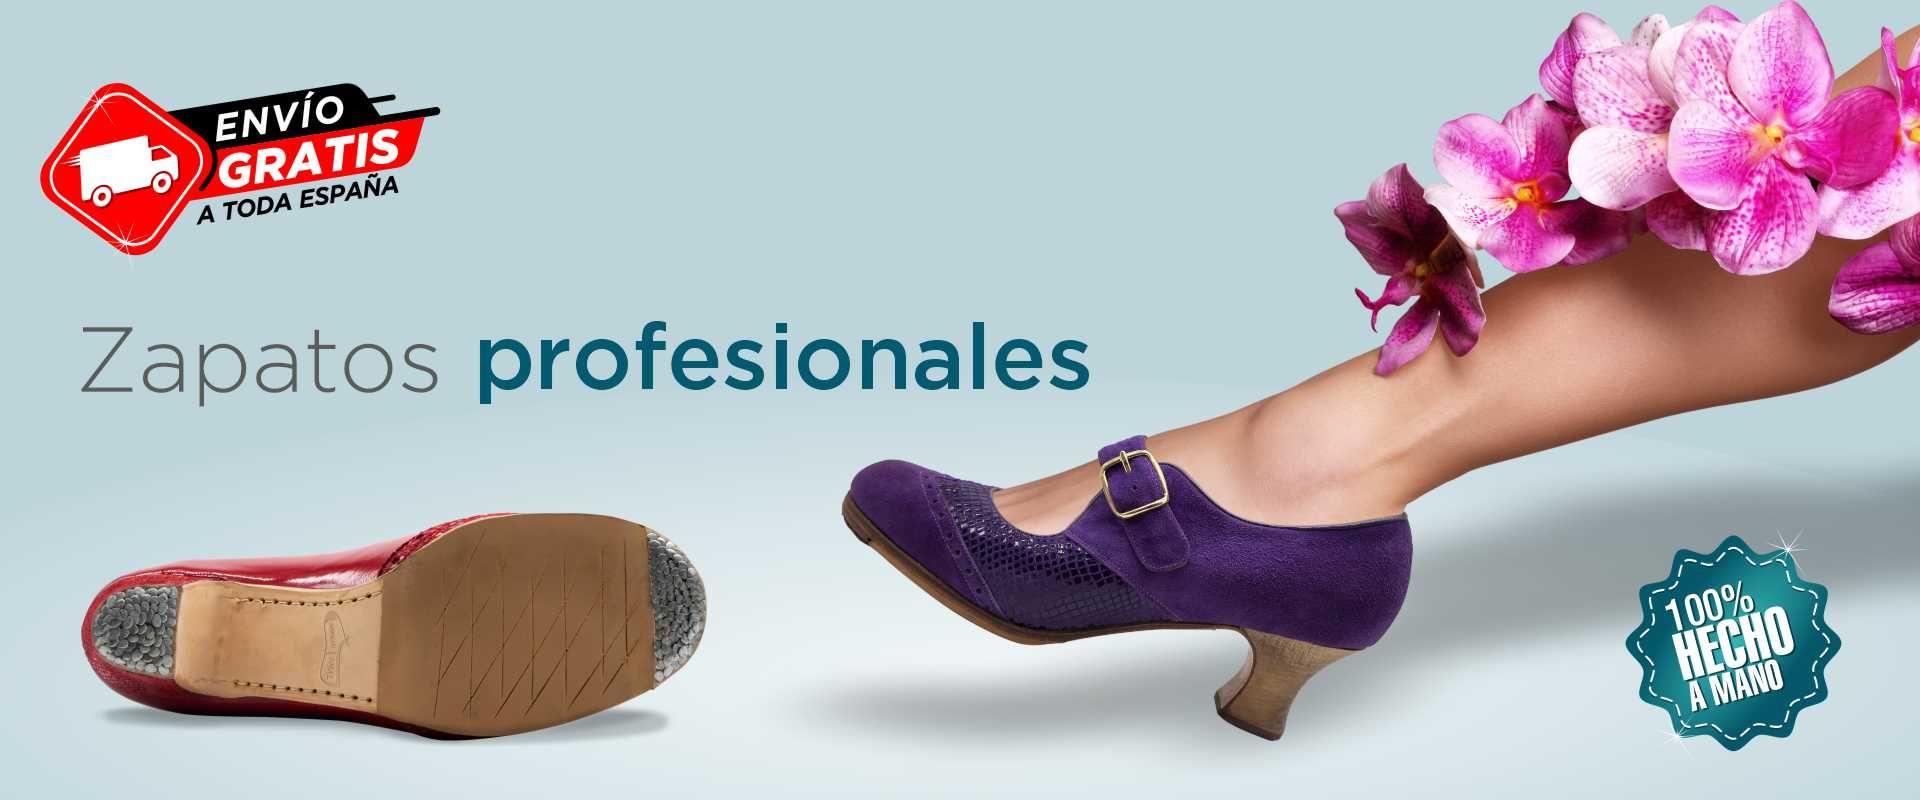 Tienda online especializada en la fabricación artesanal y venta de zapatos  para el baile flamenco, amplio y permanete stock de calzado flamenco, envío  de stock en 24h a cualquier destino, recibe tu